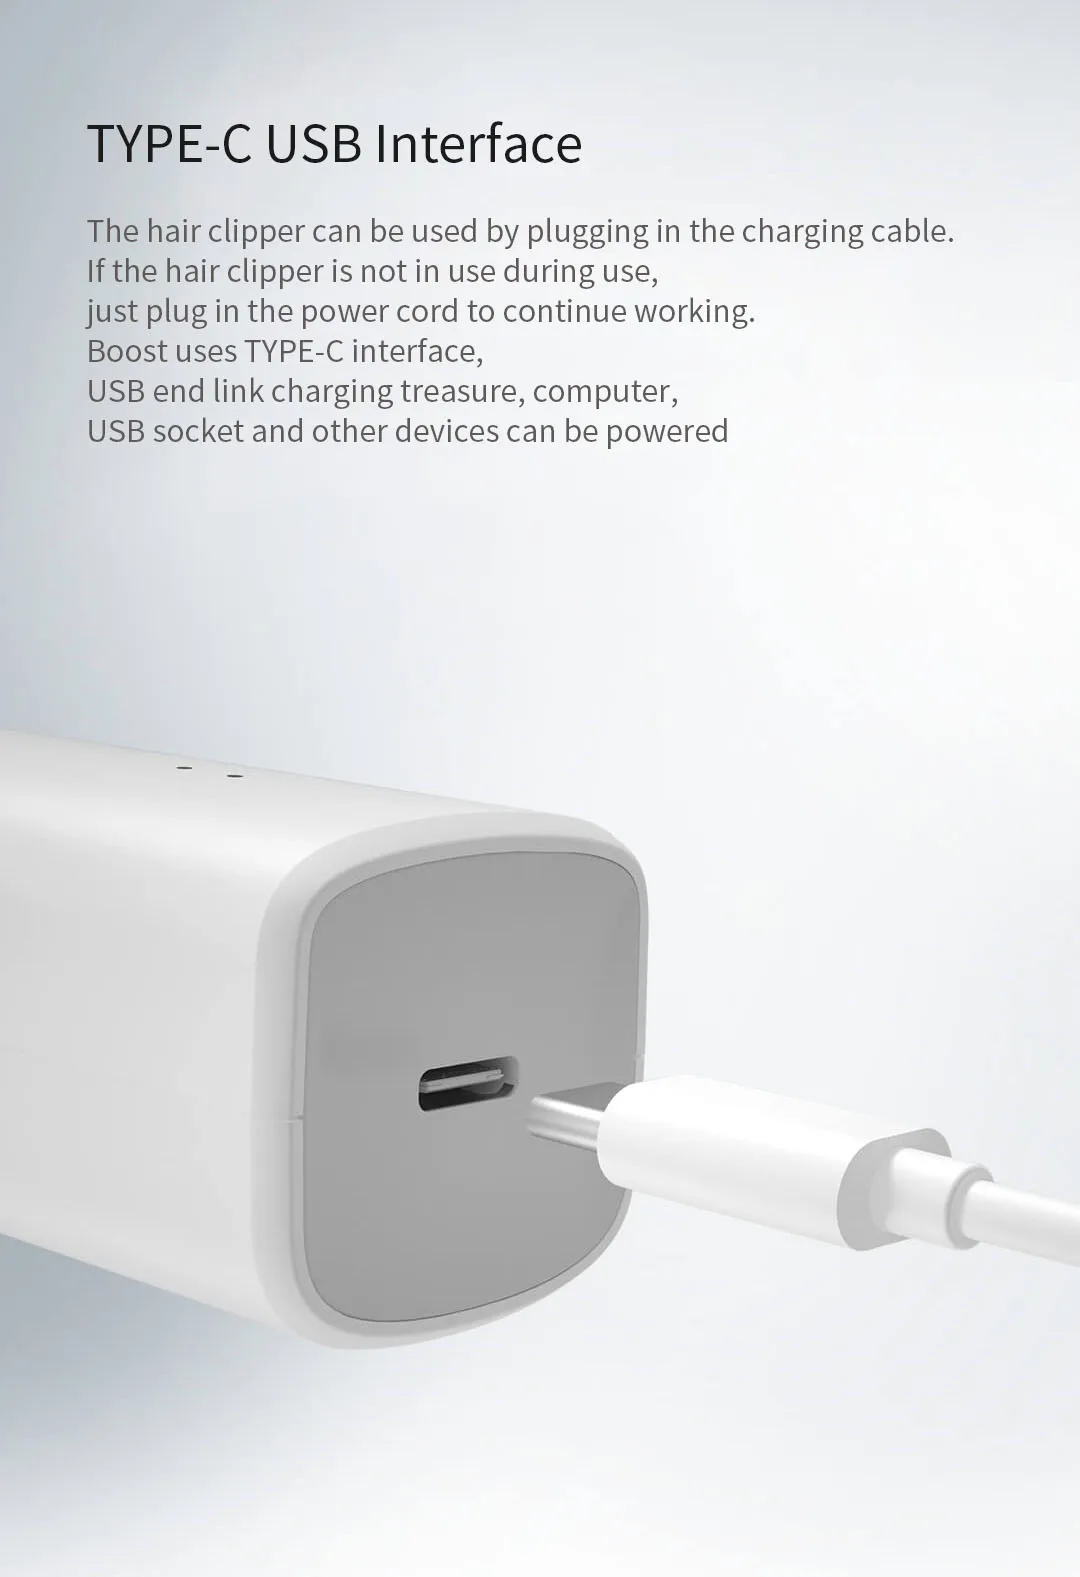 Xiaomi Mi Enchen Boost USB электрическая машинка для стрижки волос две скорости Керамический Резак Быстрая зарядка триммер для волос для детей и взрослых